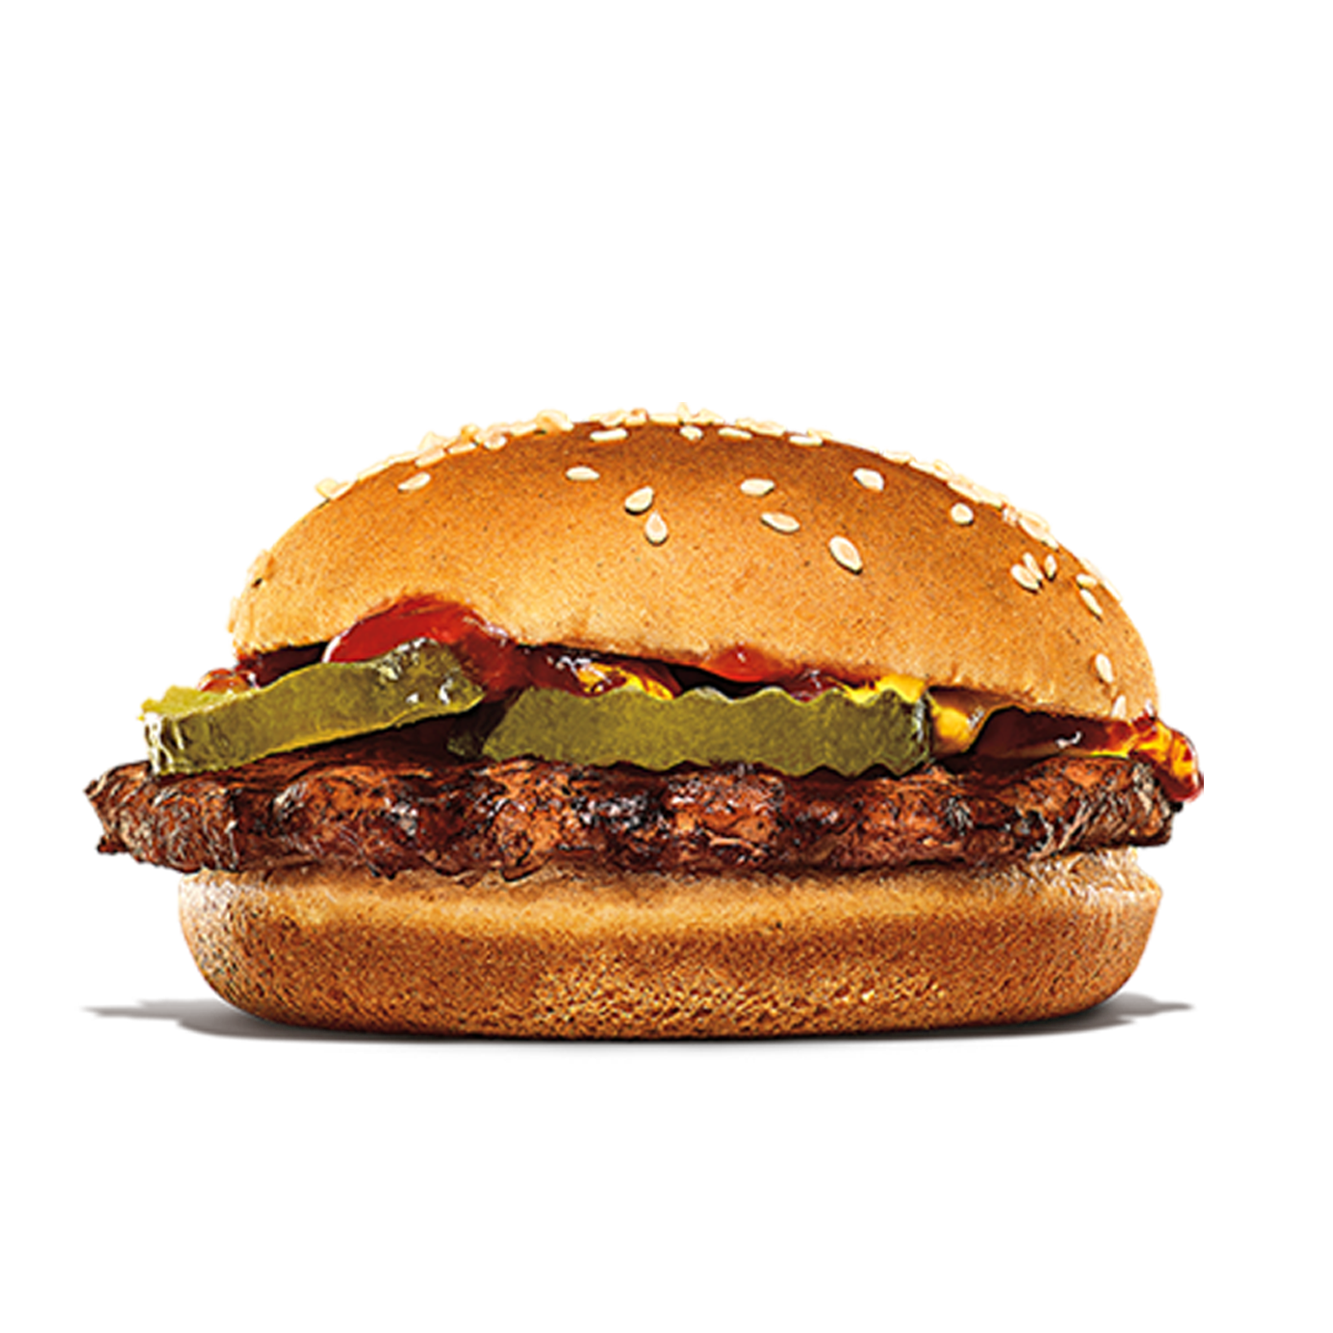 Burger King Tonawanda (716)835-2469